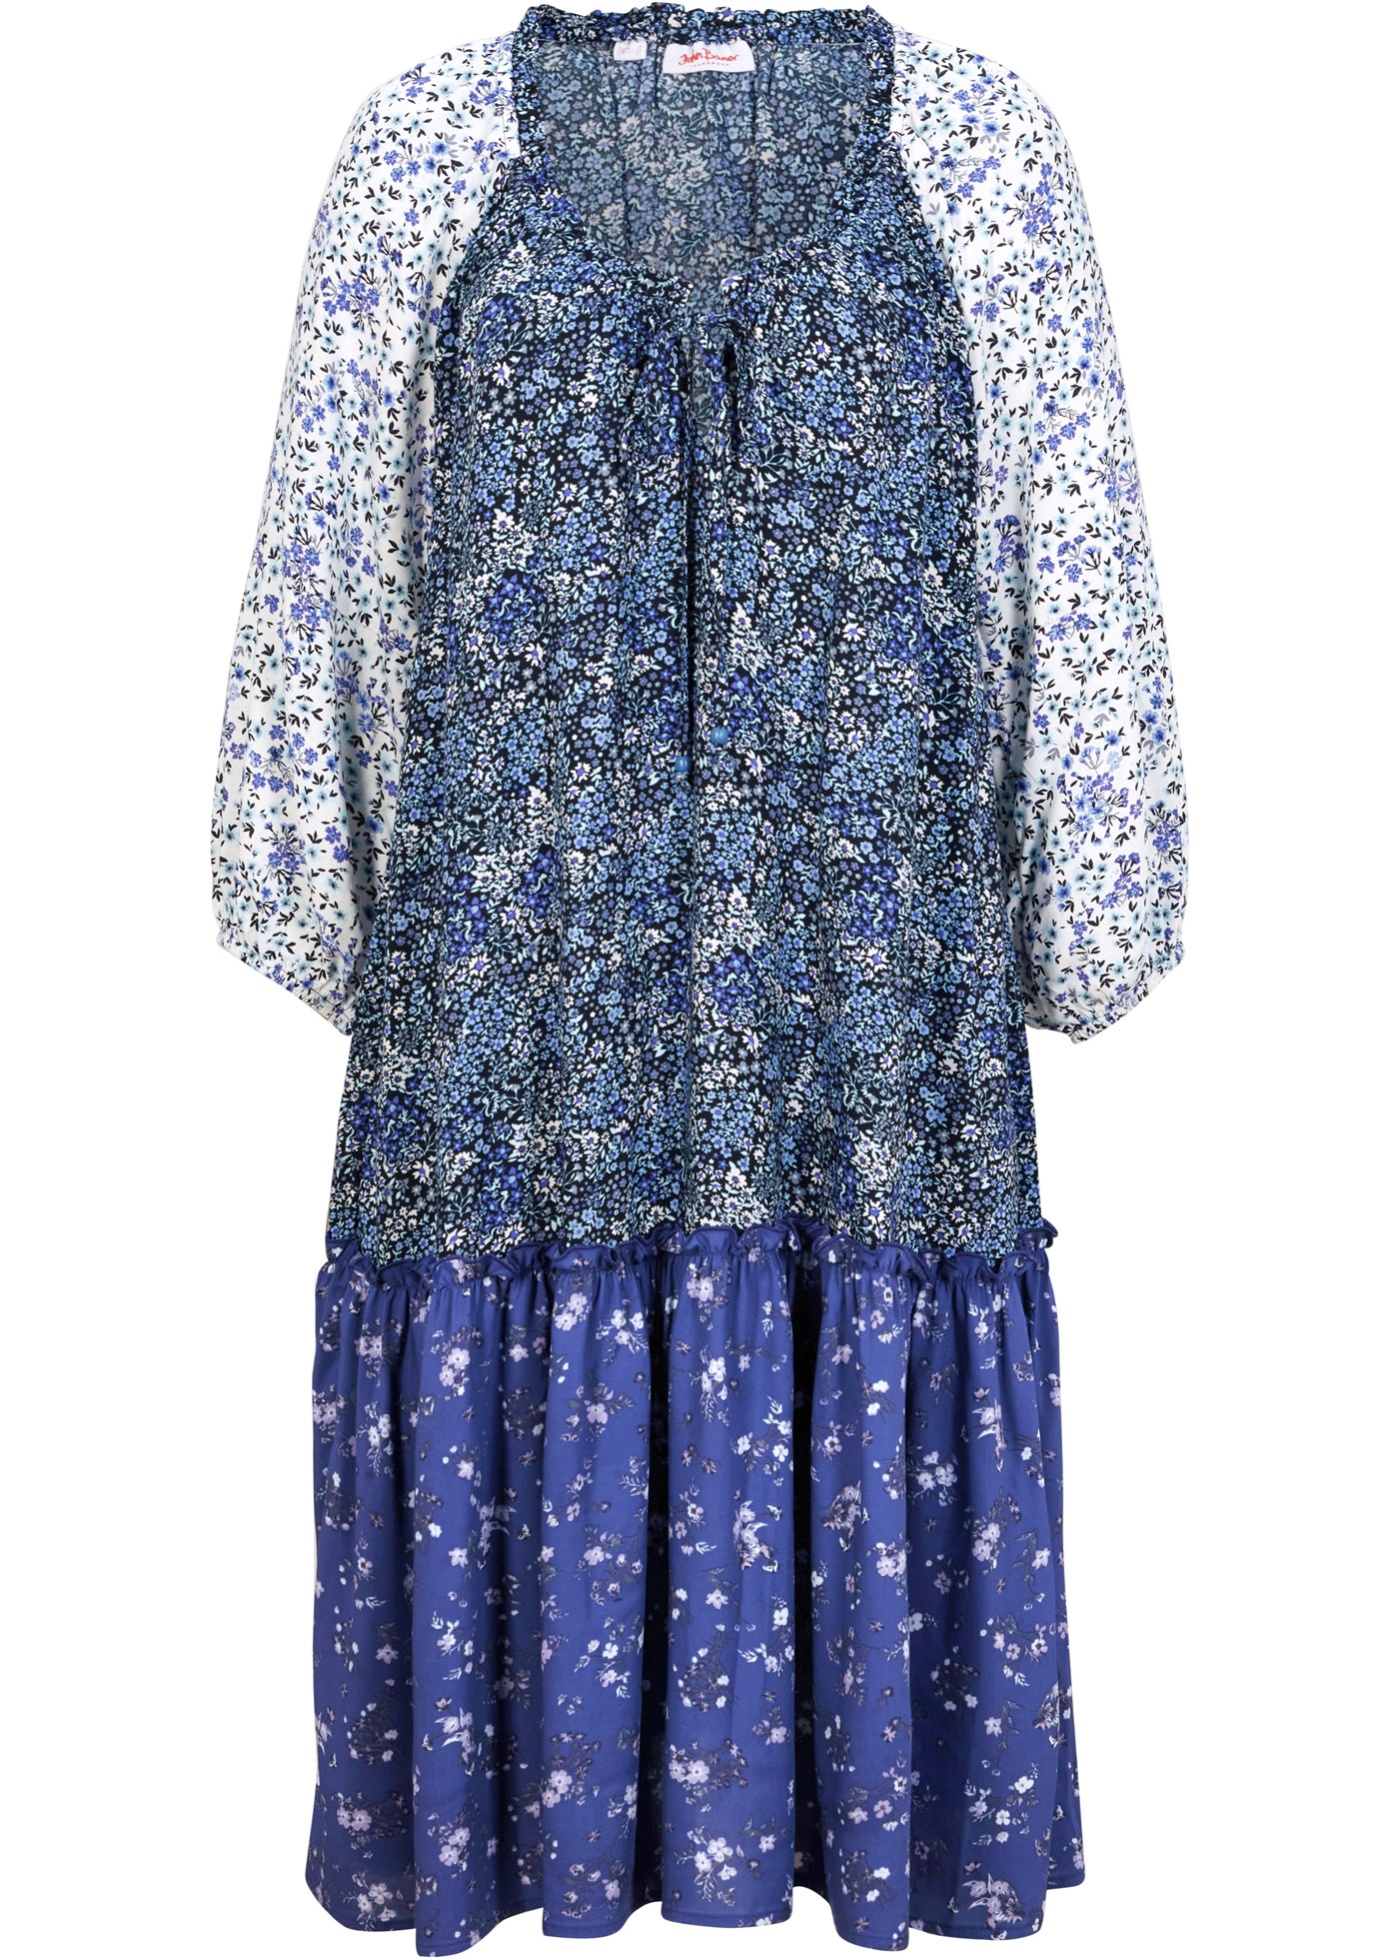 Luftiges Tunika-Kleid mit Blumenmuster und aus nachhaltiger Viskose (95745281) in edelsteinblau / mitternachtsblau / perlblau / wollweiß Paisley